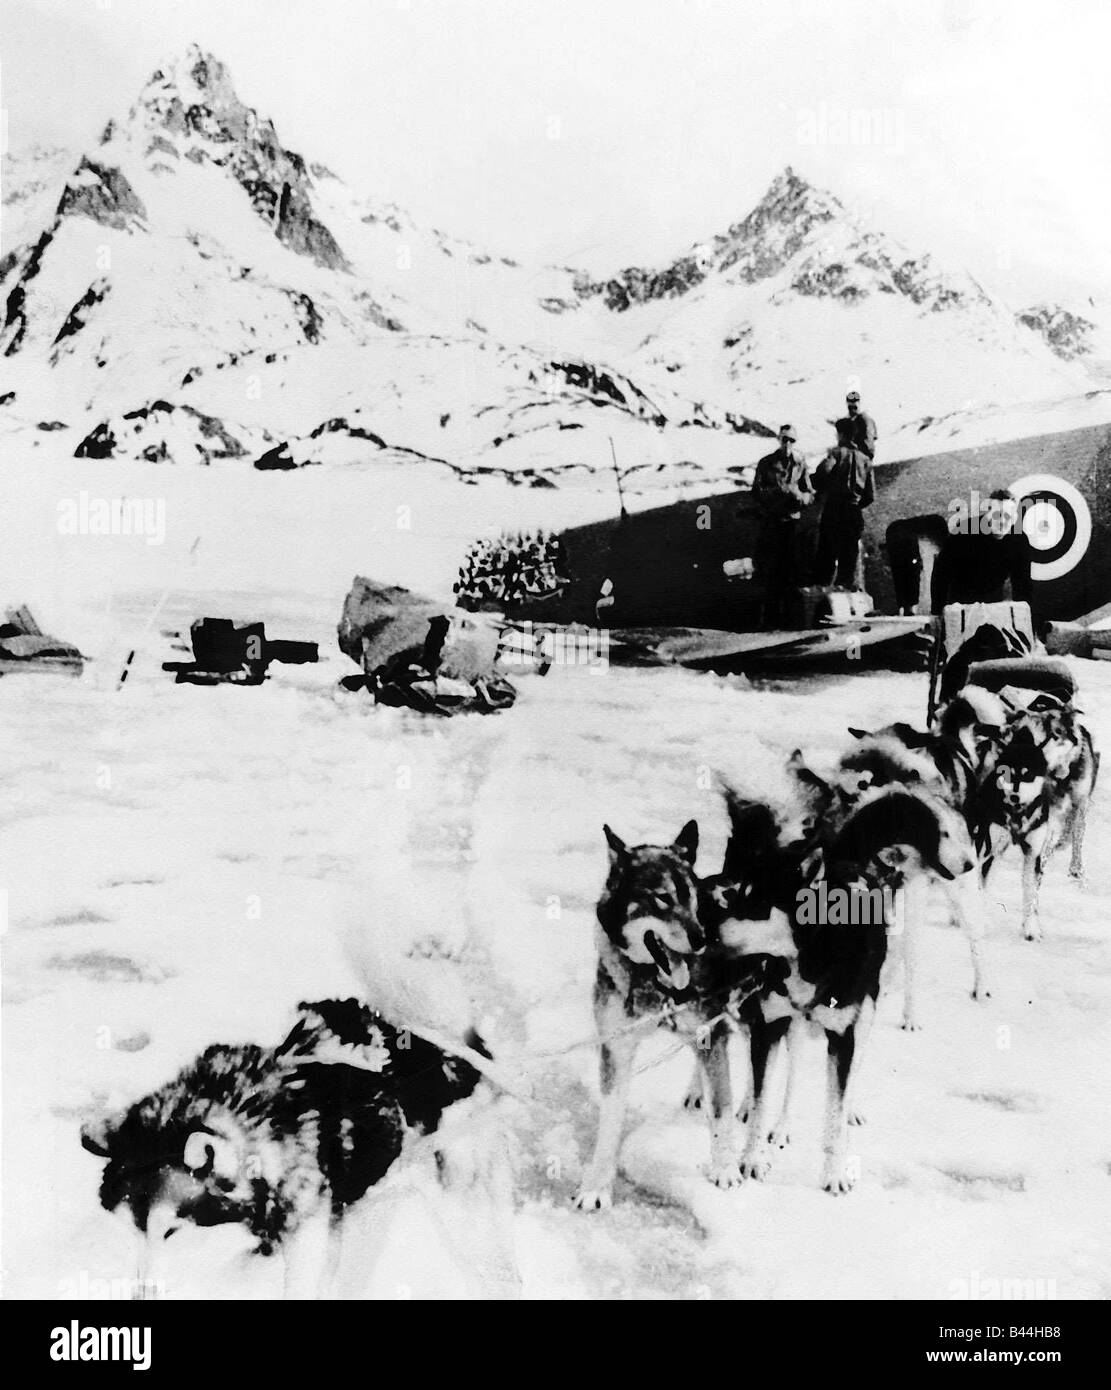 Canadian Air Force de l'équipage de bombardiers Hudson se placer à côté de l'avion après avoir perdu dans la neige au Groenland un chien husky rescue team arrive sur les lieux WW2 1942 Banque D'Images